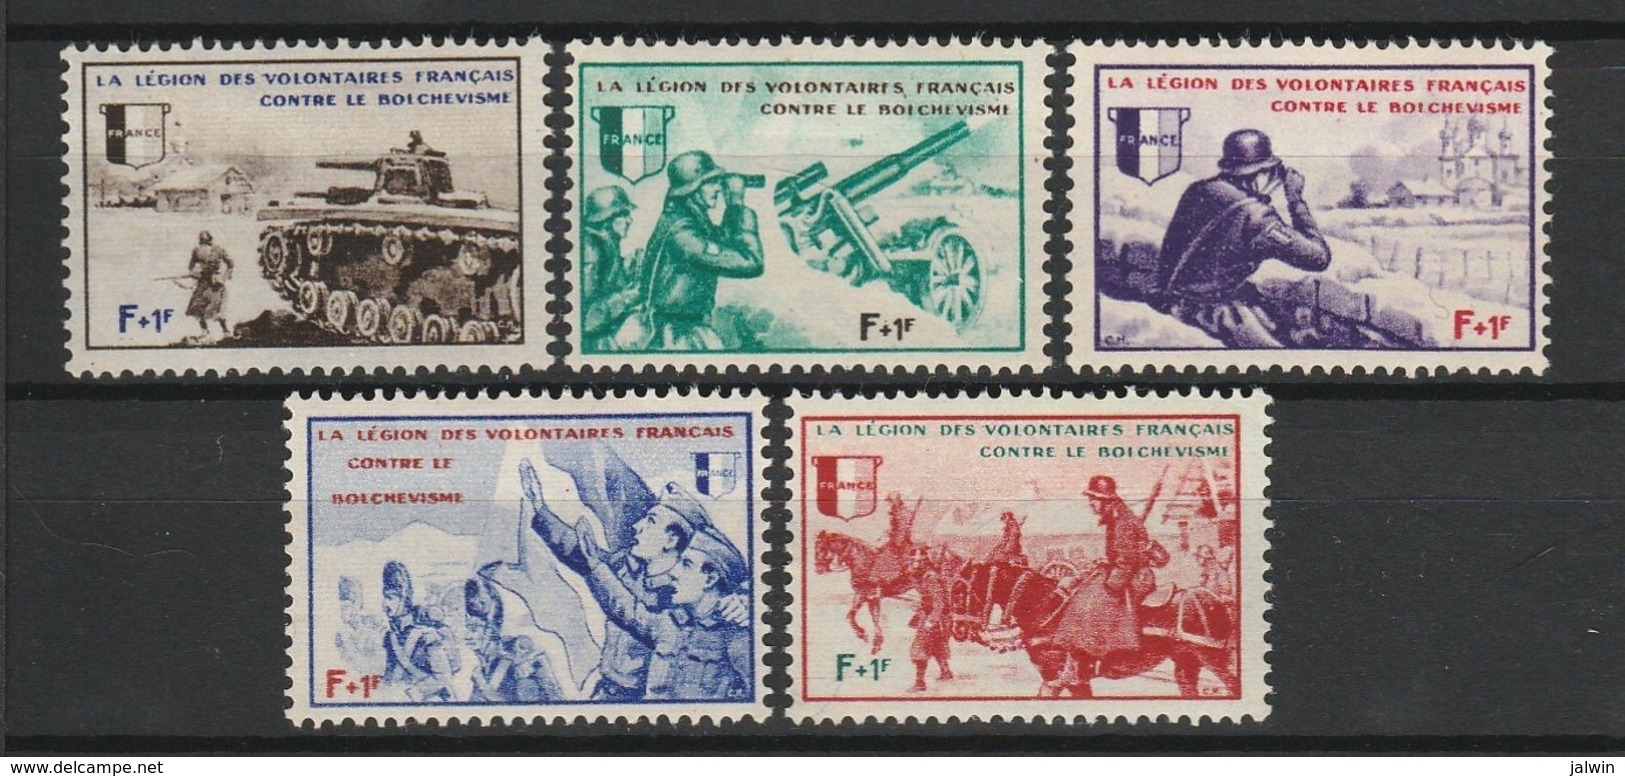 FRANCE LVF / L.V.F. (LEGION DES VOLONTAIRES FRANCAIS) 1942 YT N° 6 à 10 * SERIE BORODINO - War Stamps